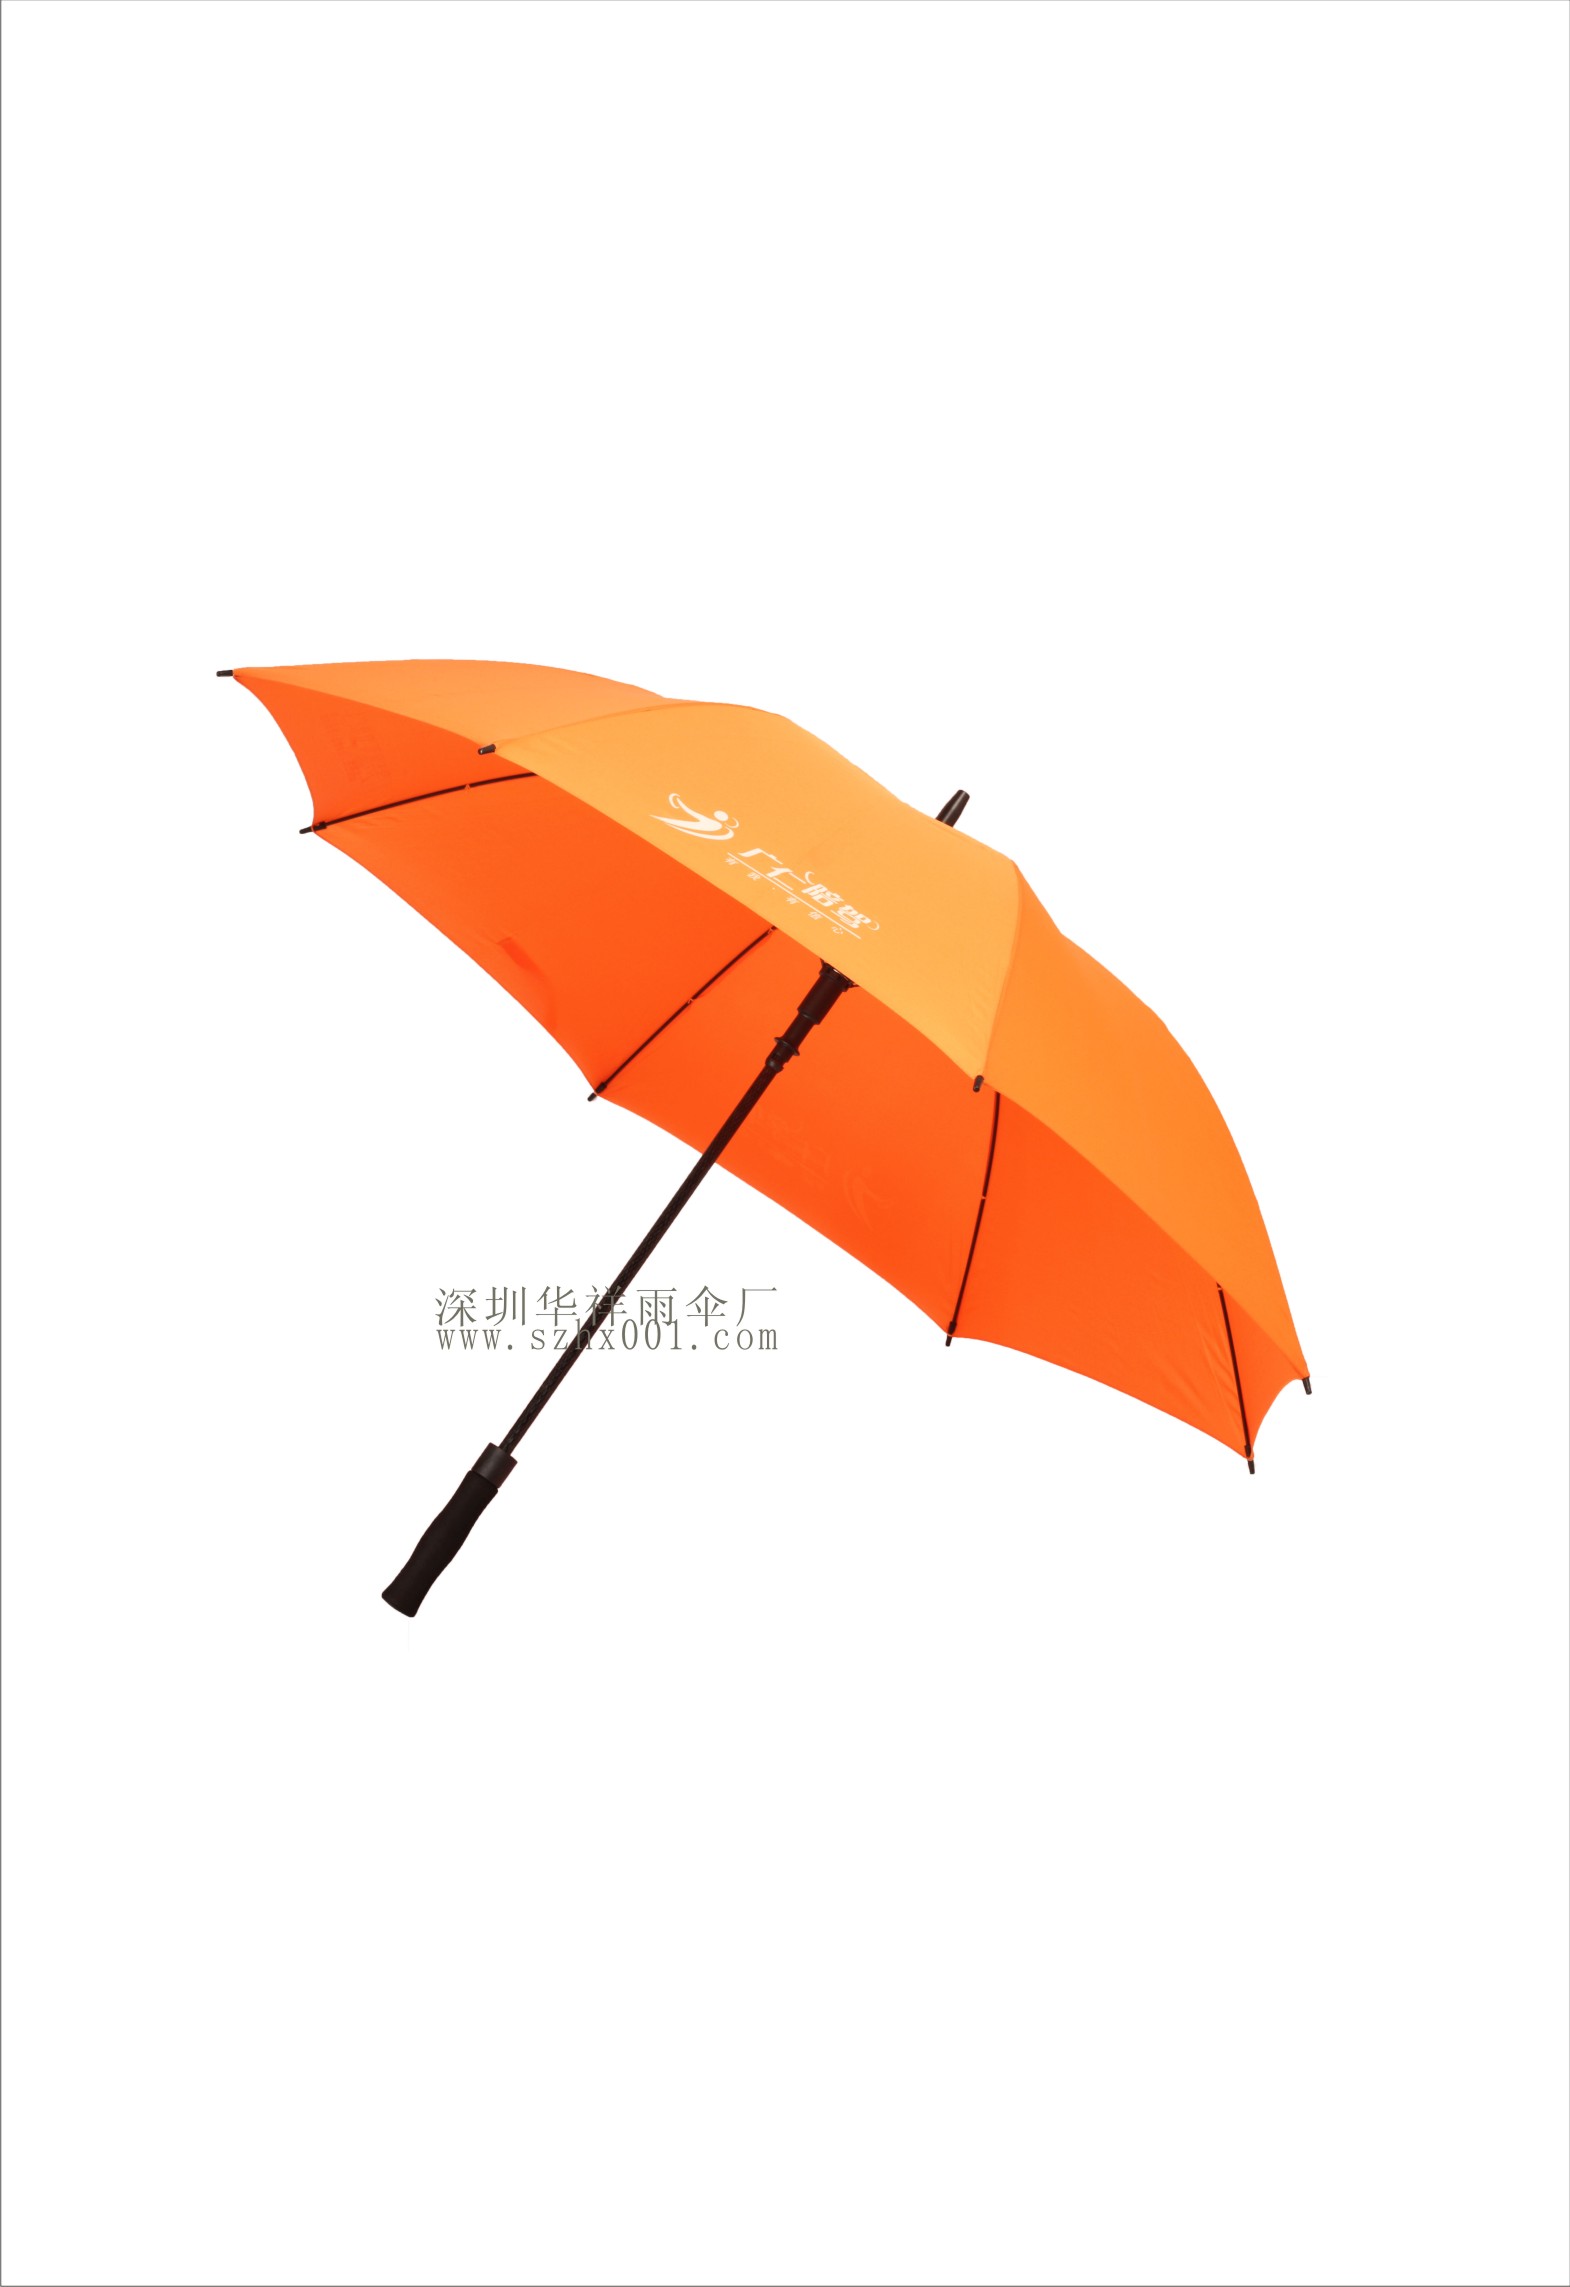 供应广告雨伞 雨伞厂家 雨伞业公司定做雨伞 高尔夫雨伞高档雨伞厂家定做